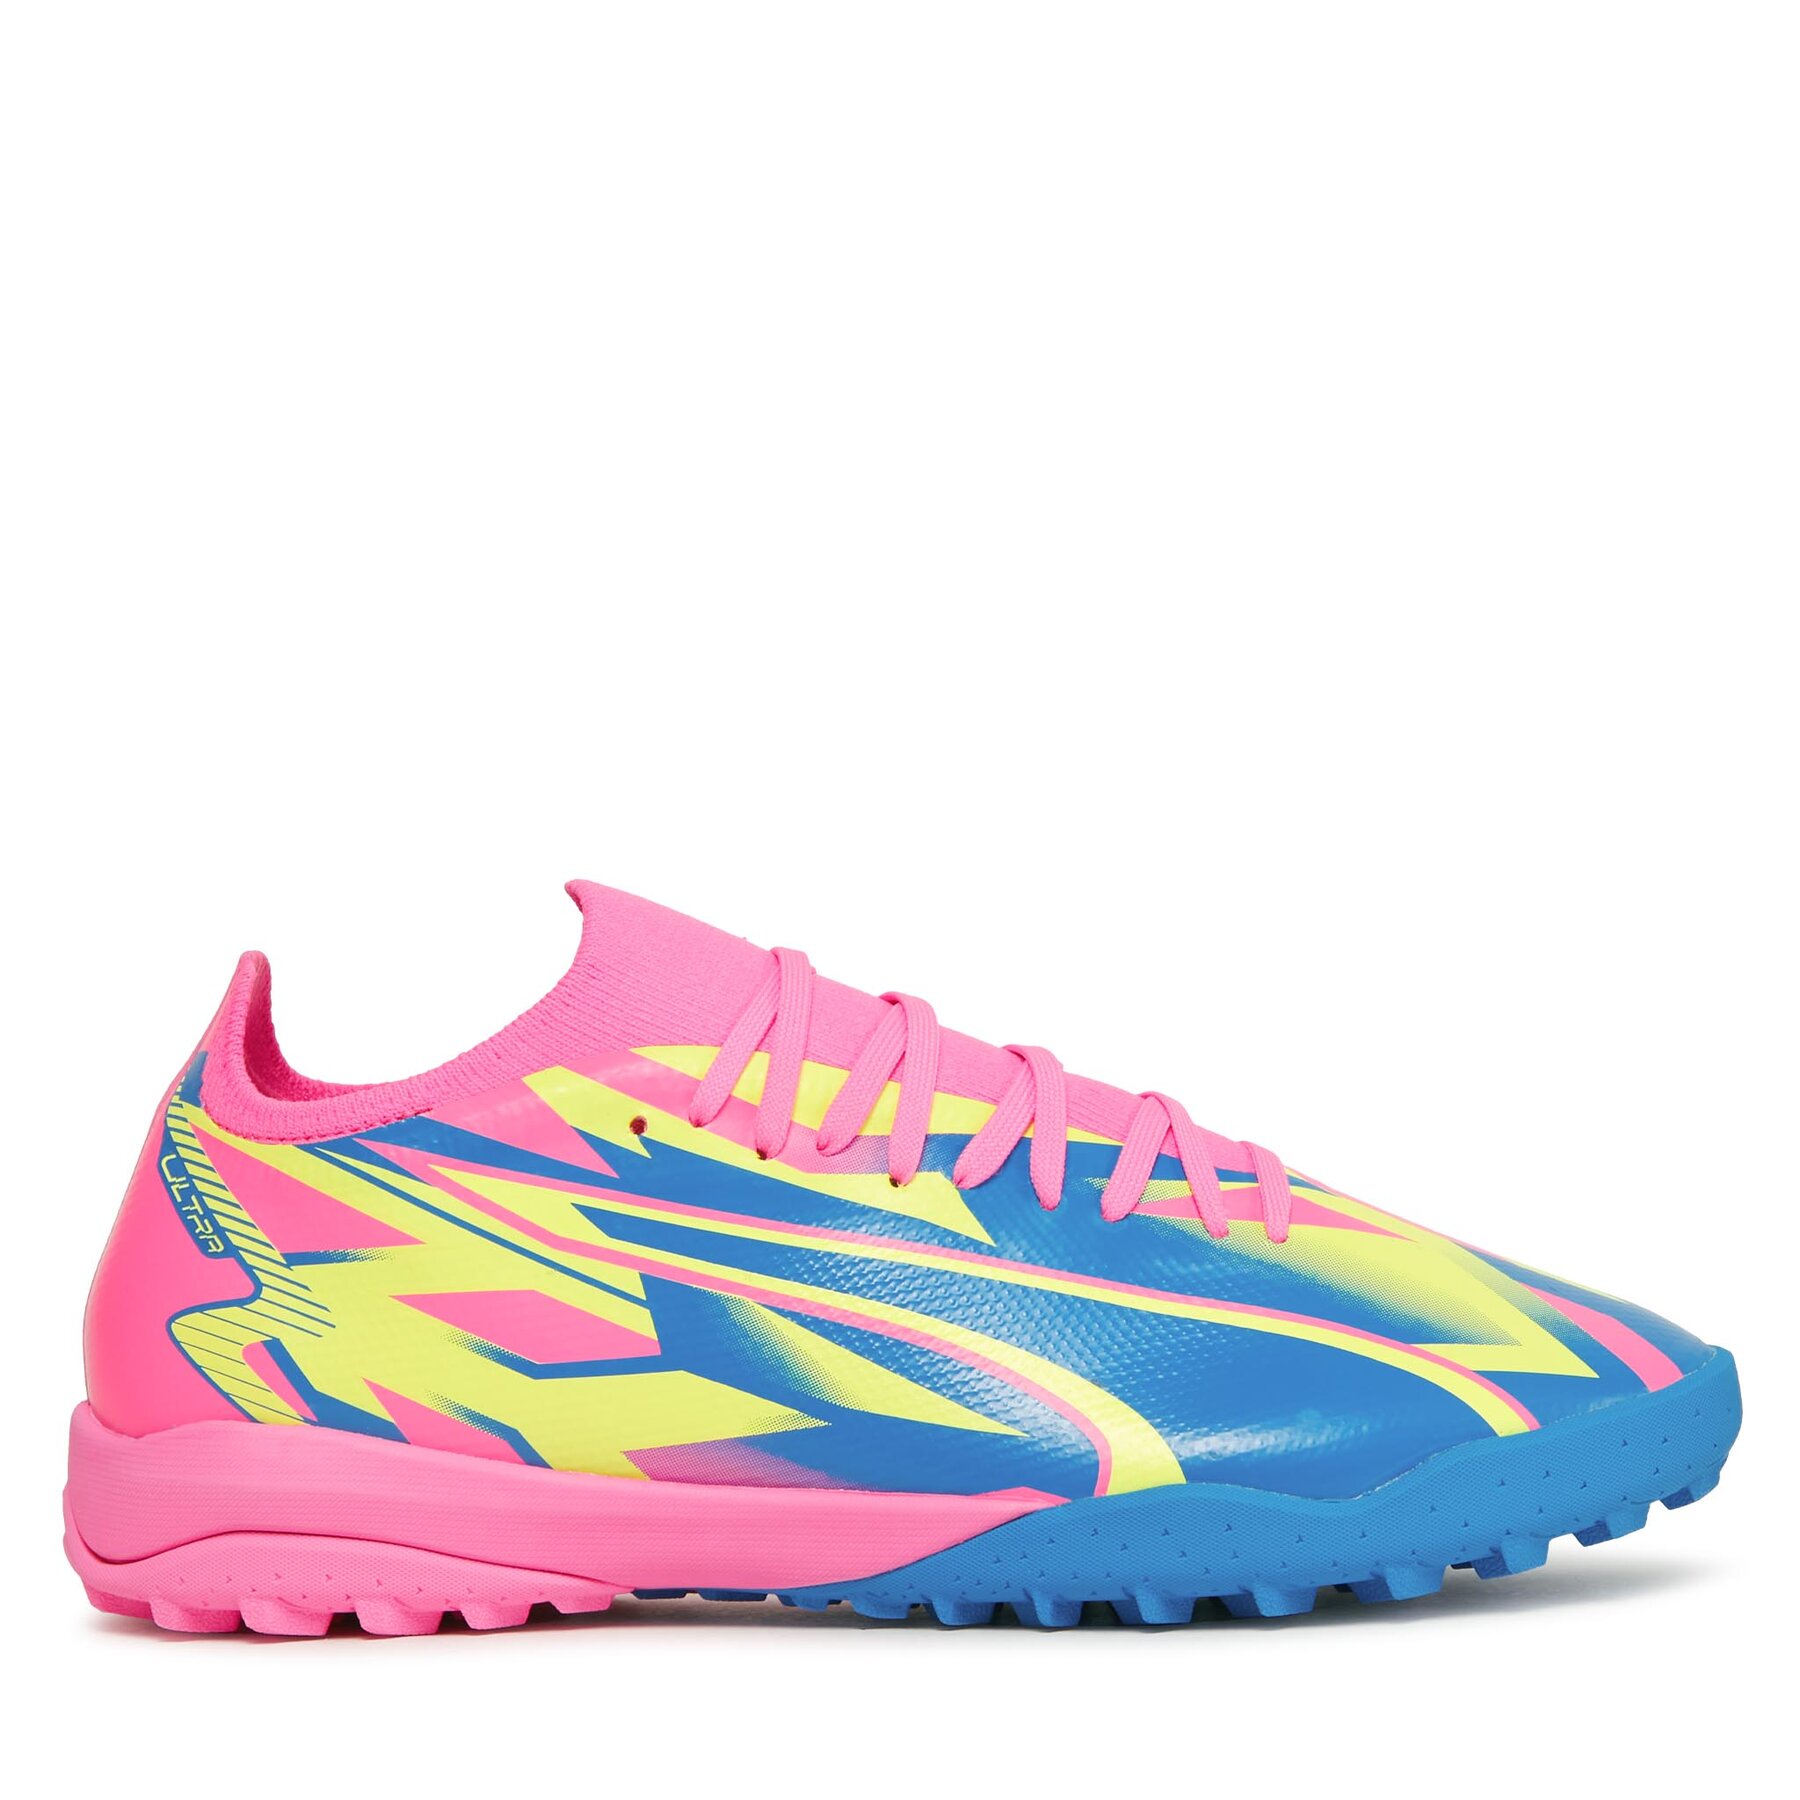 Schuhe Puma Match Energy Tt 107544 01 Luminous Pink/Yellow Alert/Ultra Blue von Puma